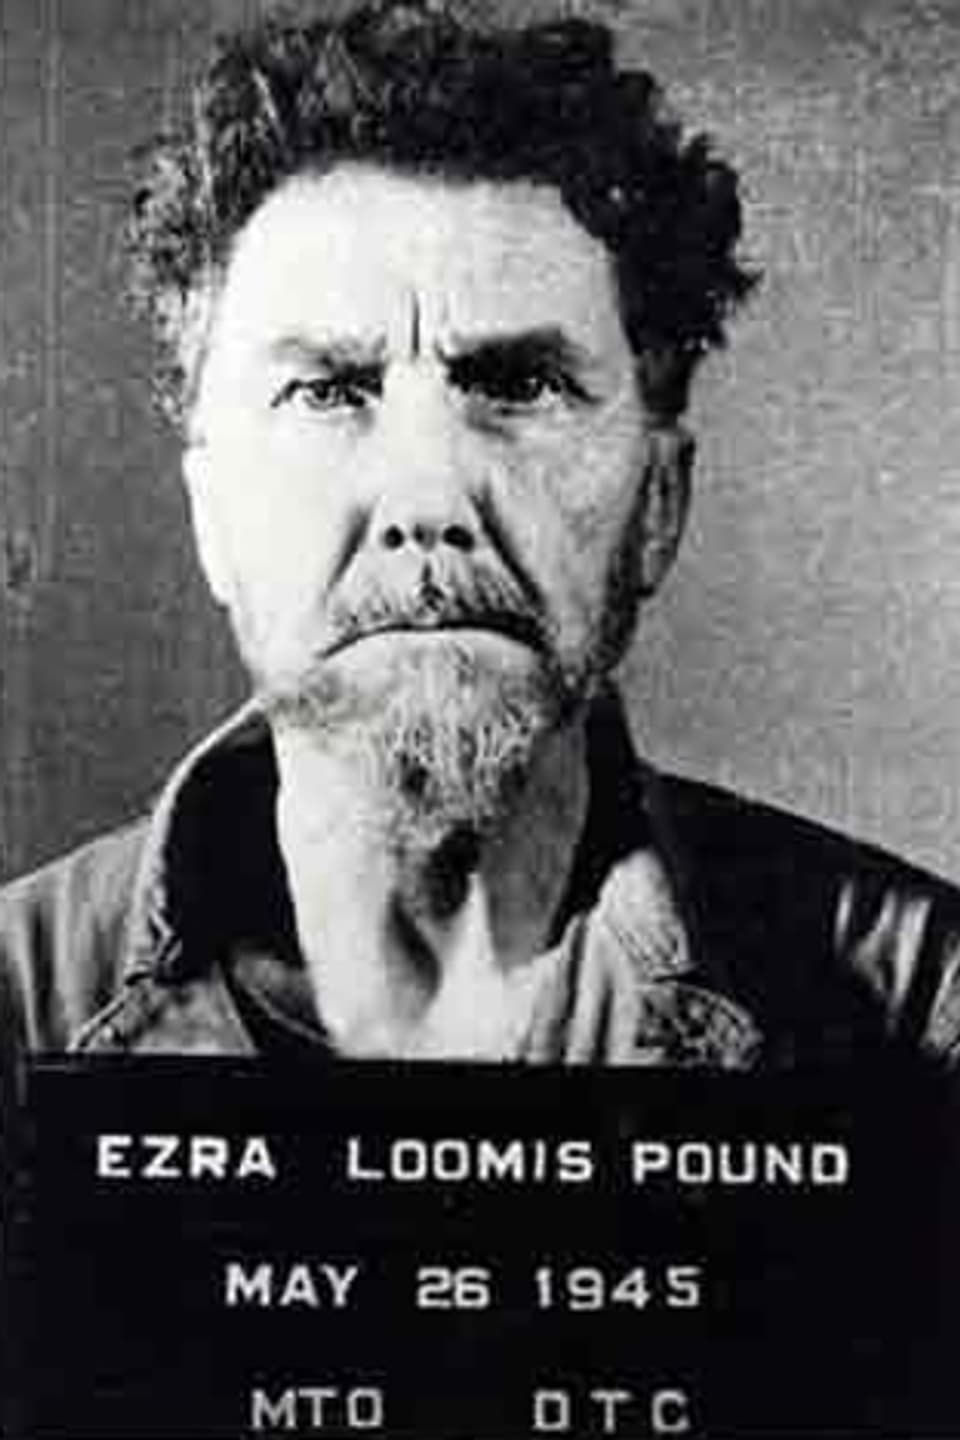 Ein Porträt von Ezra Pound, darunter eine Tafel mit der Aufschrift «Ezra Loomis Pound, May 26 1945».